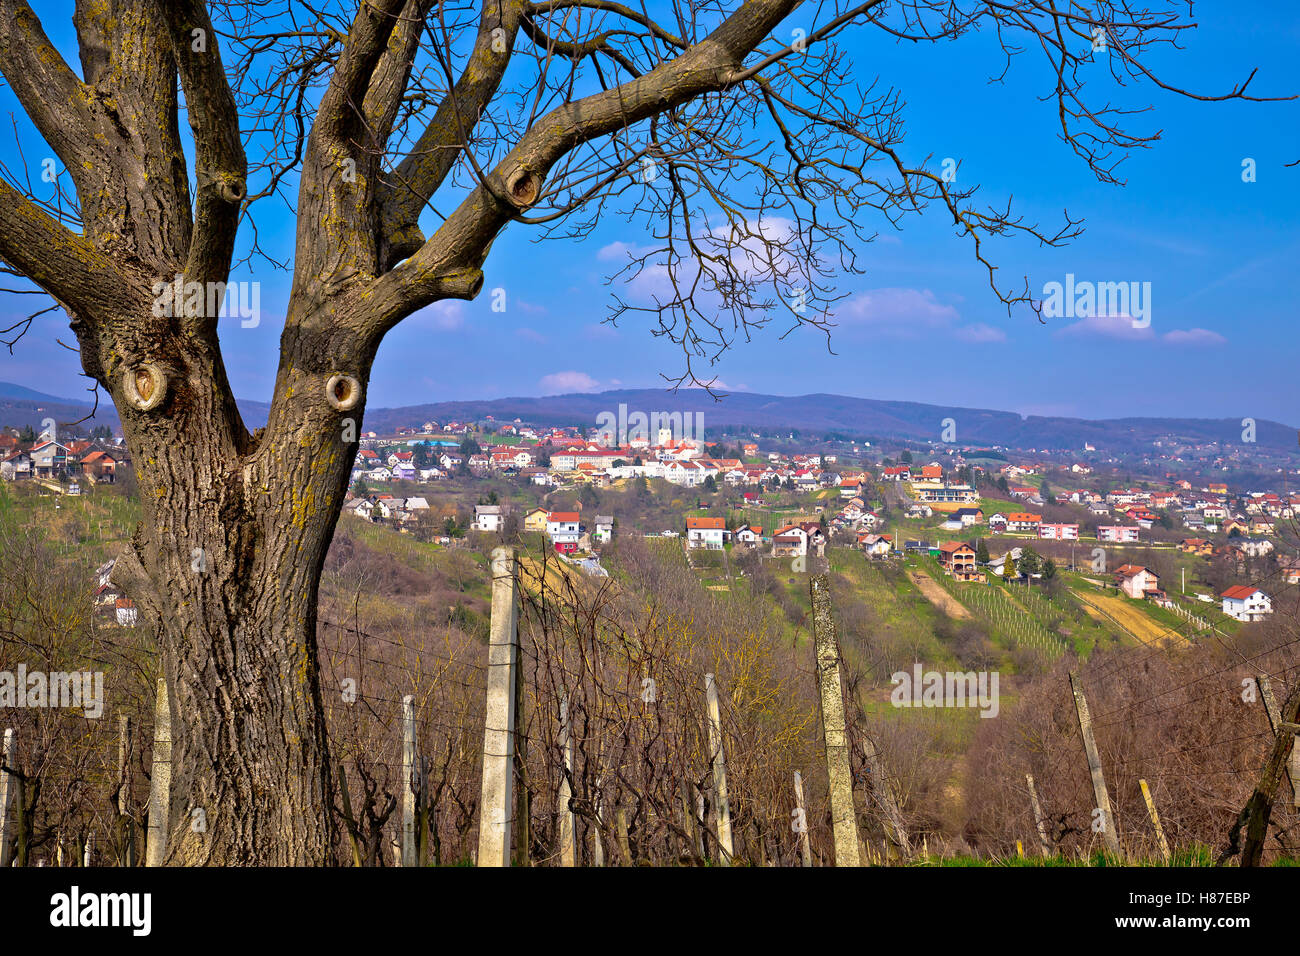 Town of Sveti Ivan Zelina in Prigorje, Croatia Stock Photo